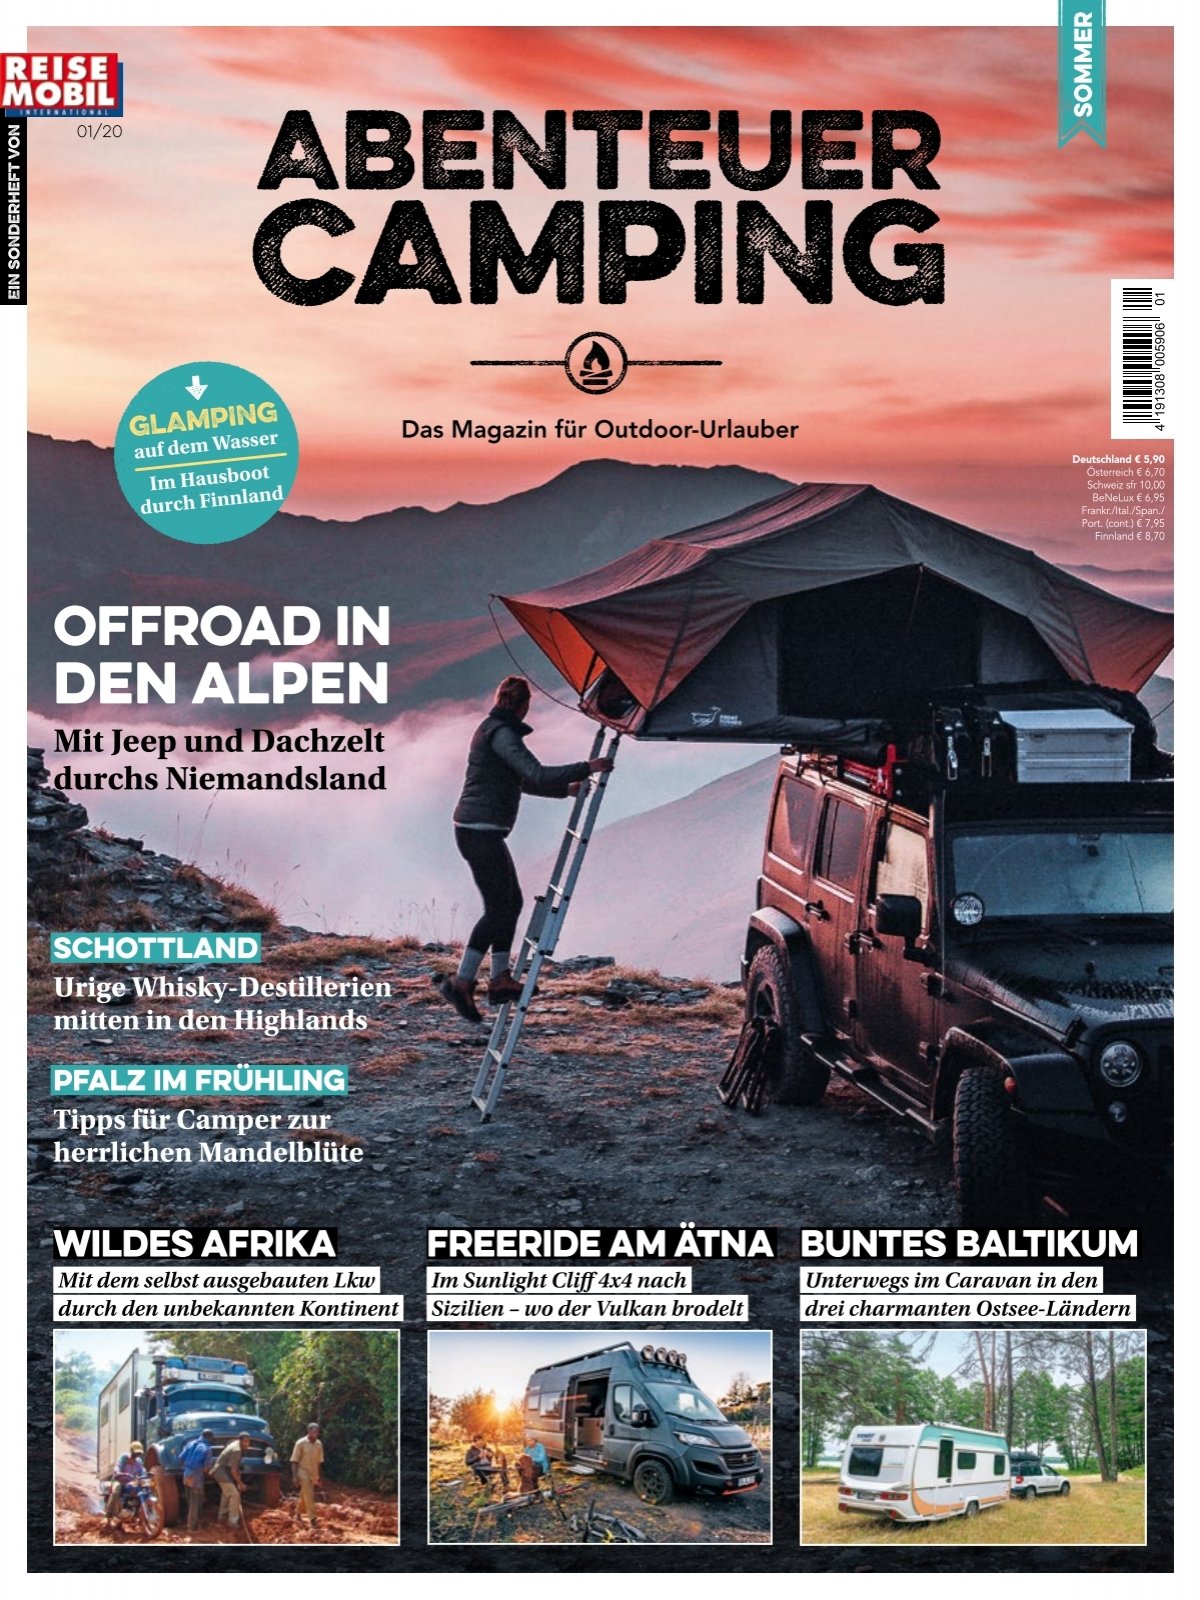 Mehrstöckiges Luxus-Autozelt: Hier thront der neue Camping-König